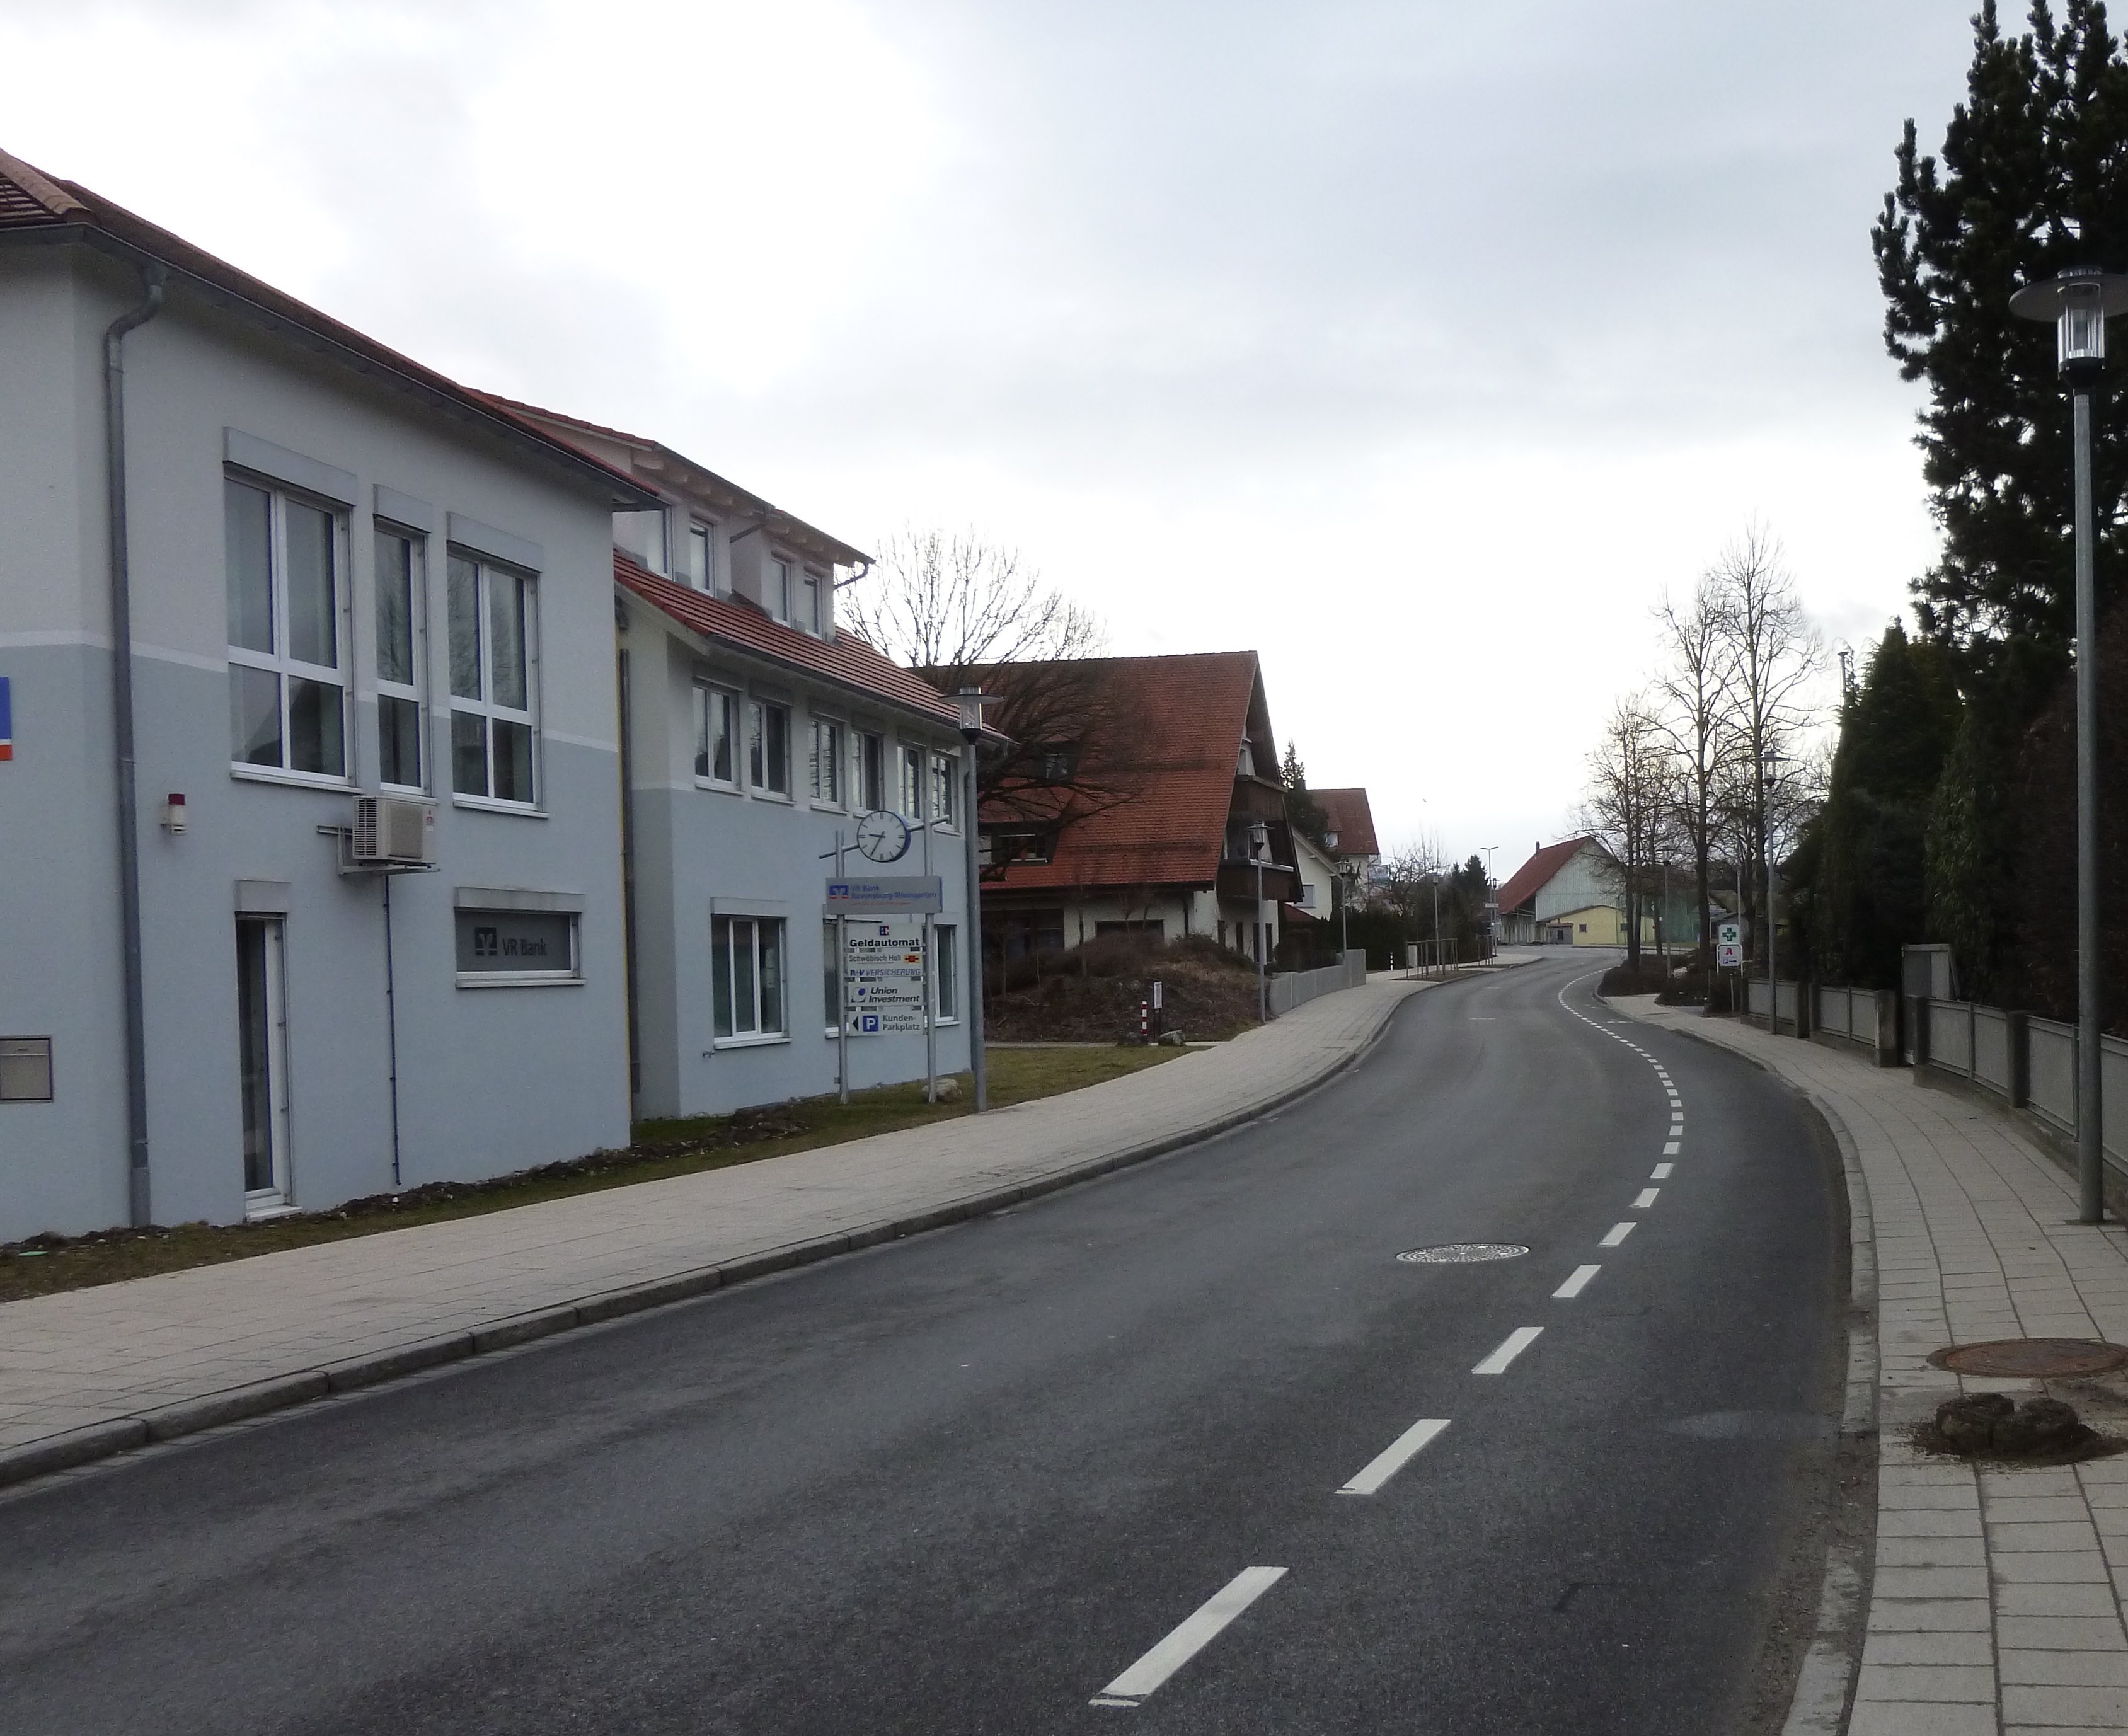  Verwaltungs- und VR-Bankgebäude Ravensburger Straße 12 